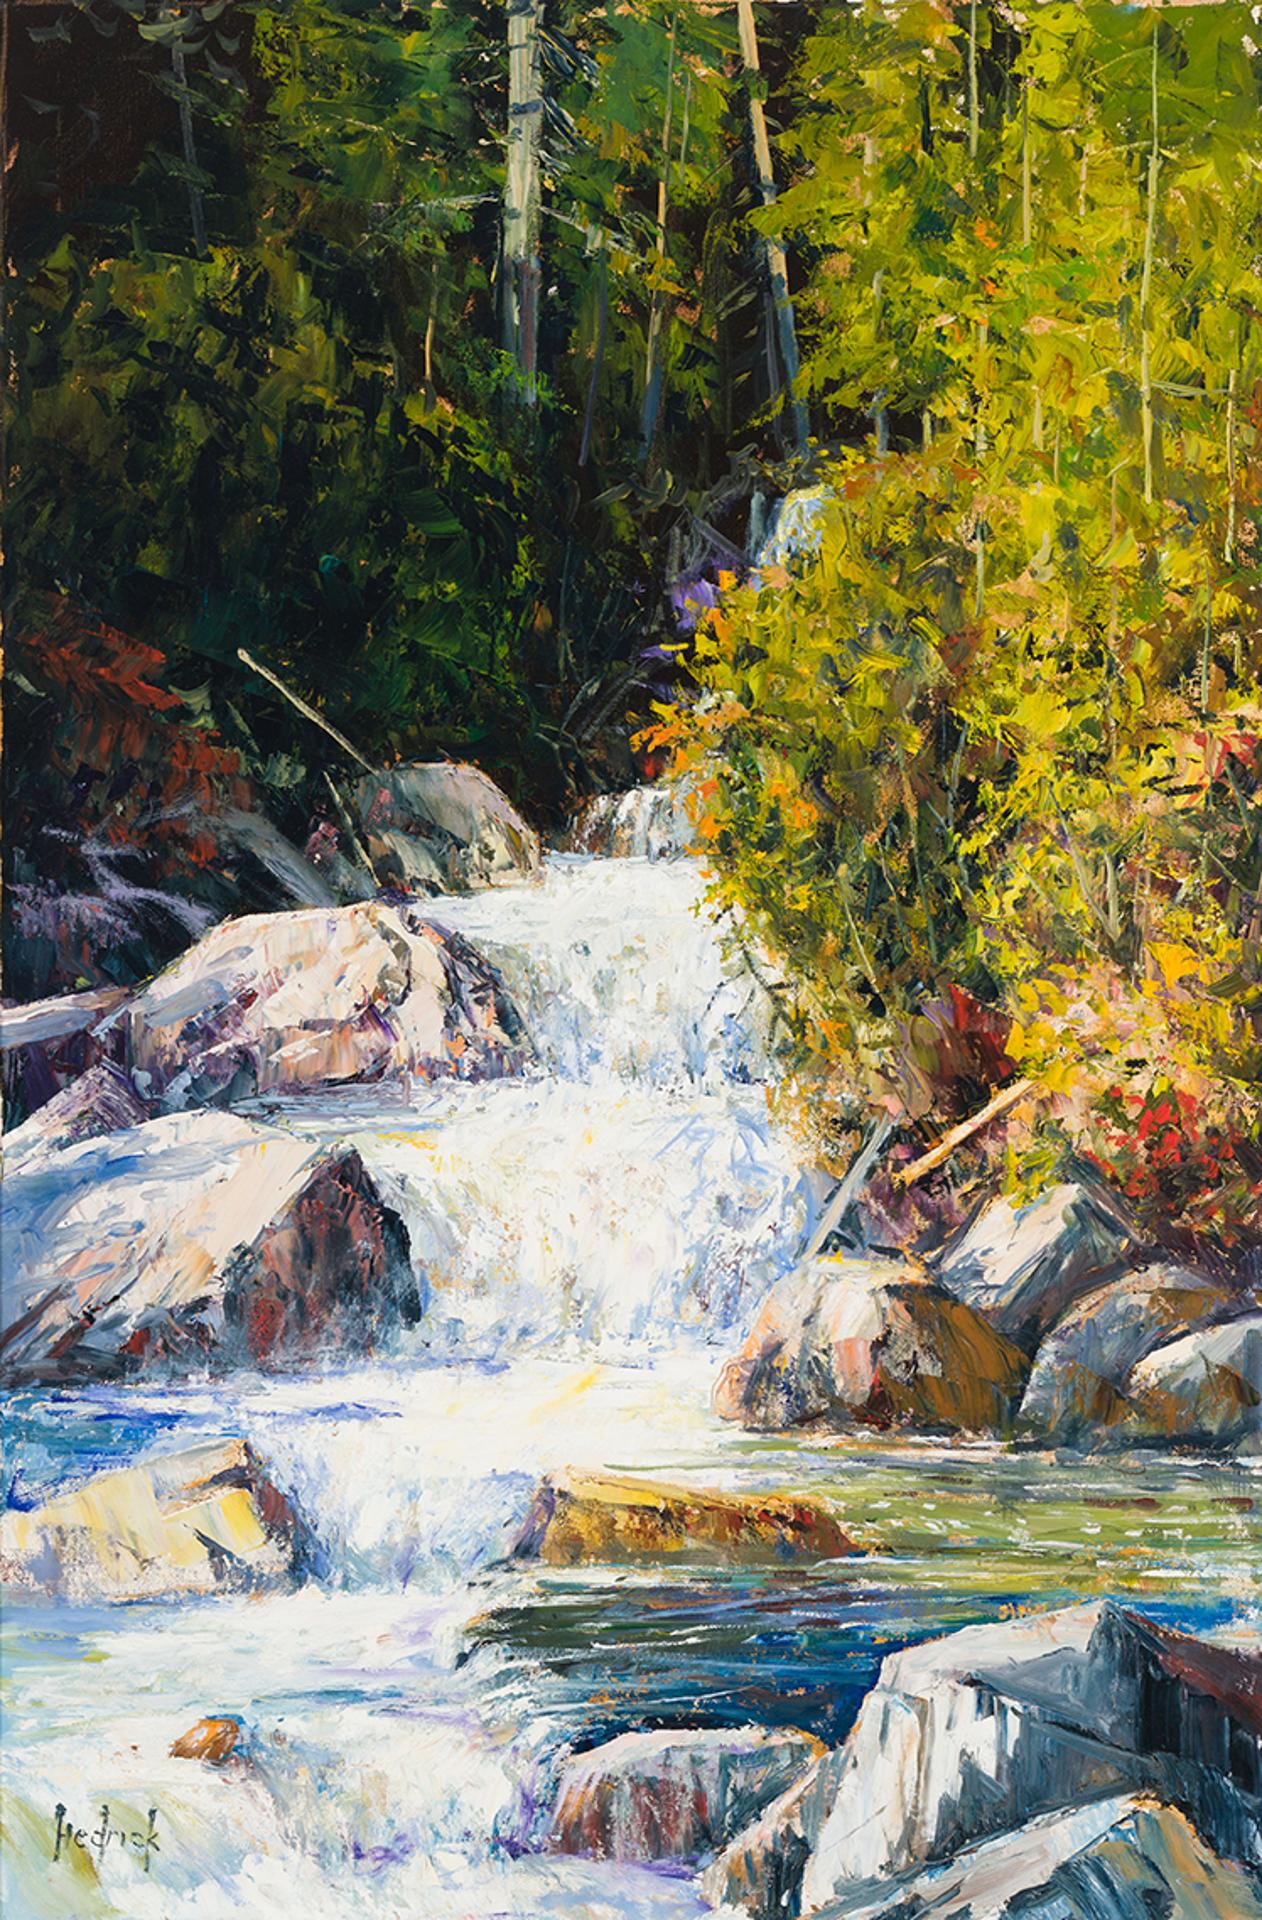 Ron Hedrick (1942) - Autumn Waterfall